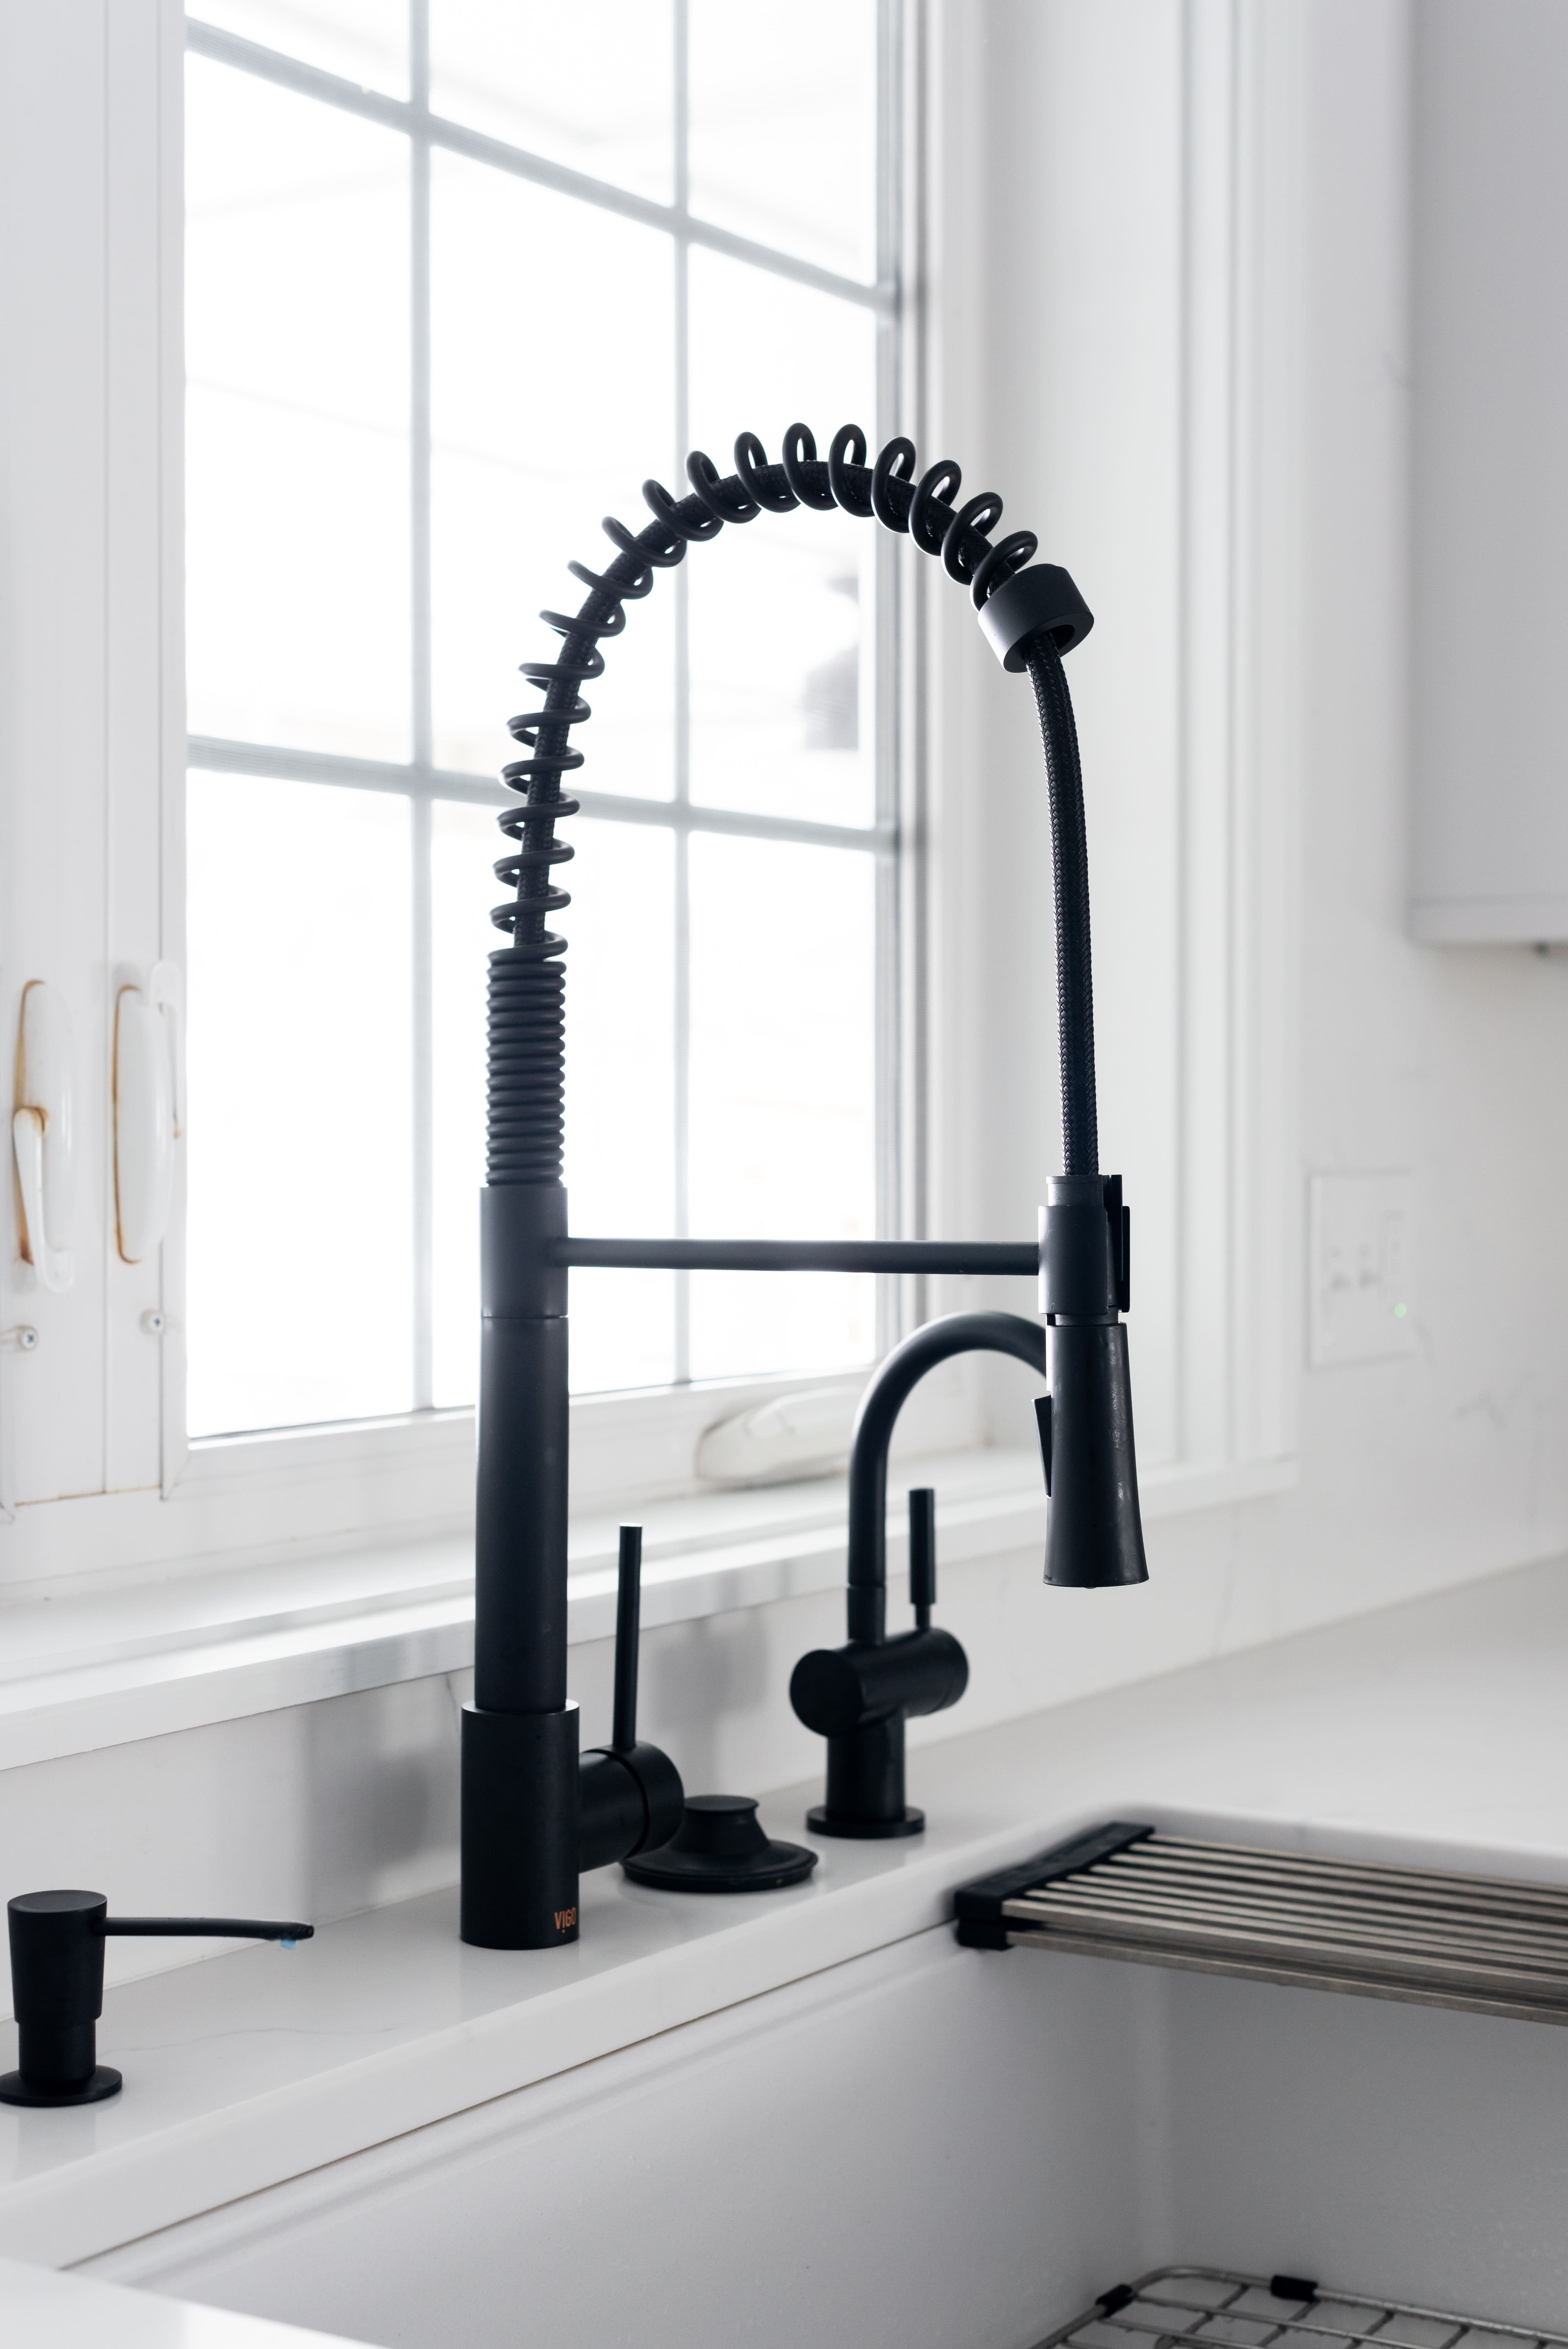 black kitchen faucet